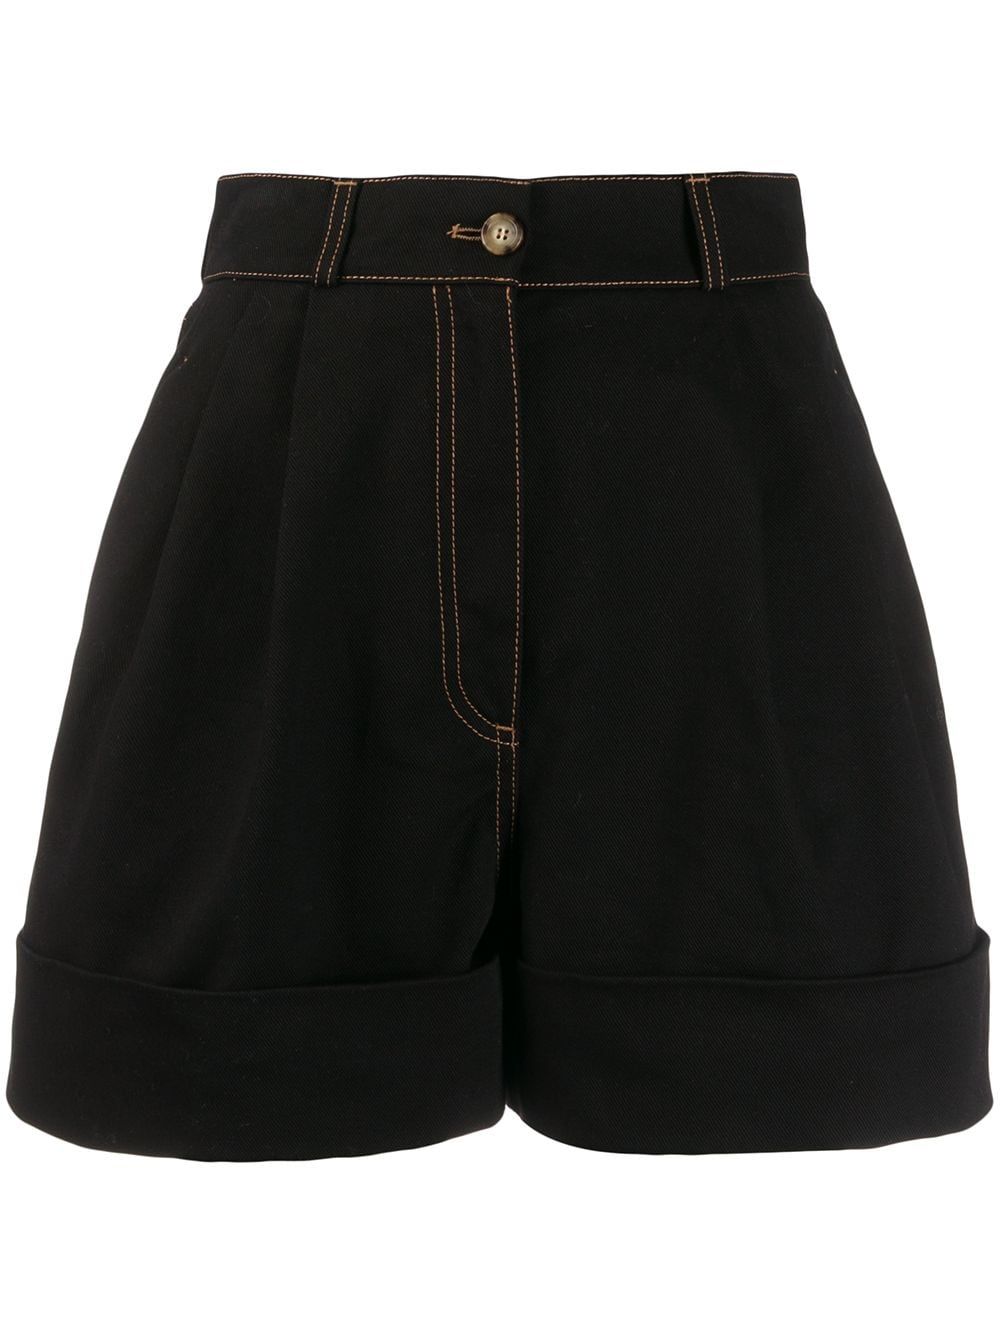 Comfortable yet stylish high waisted black shorts